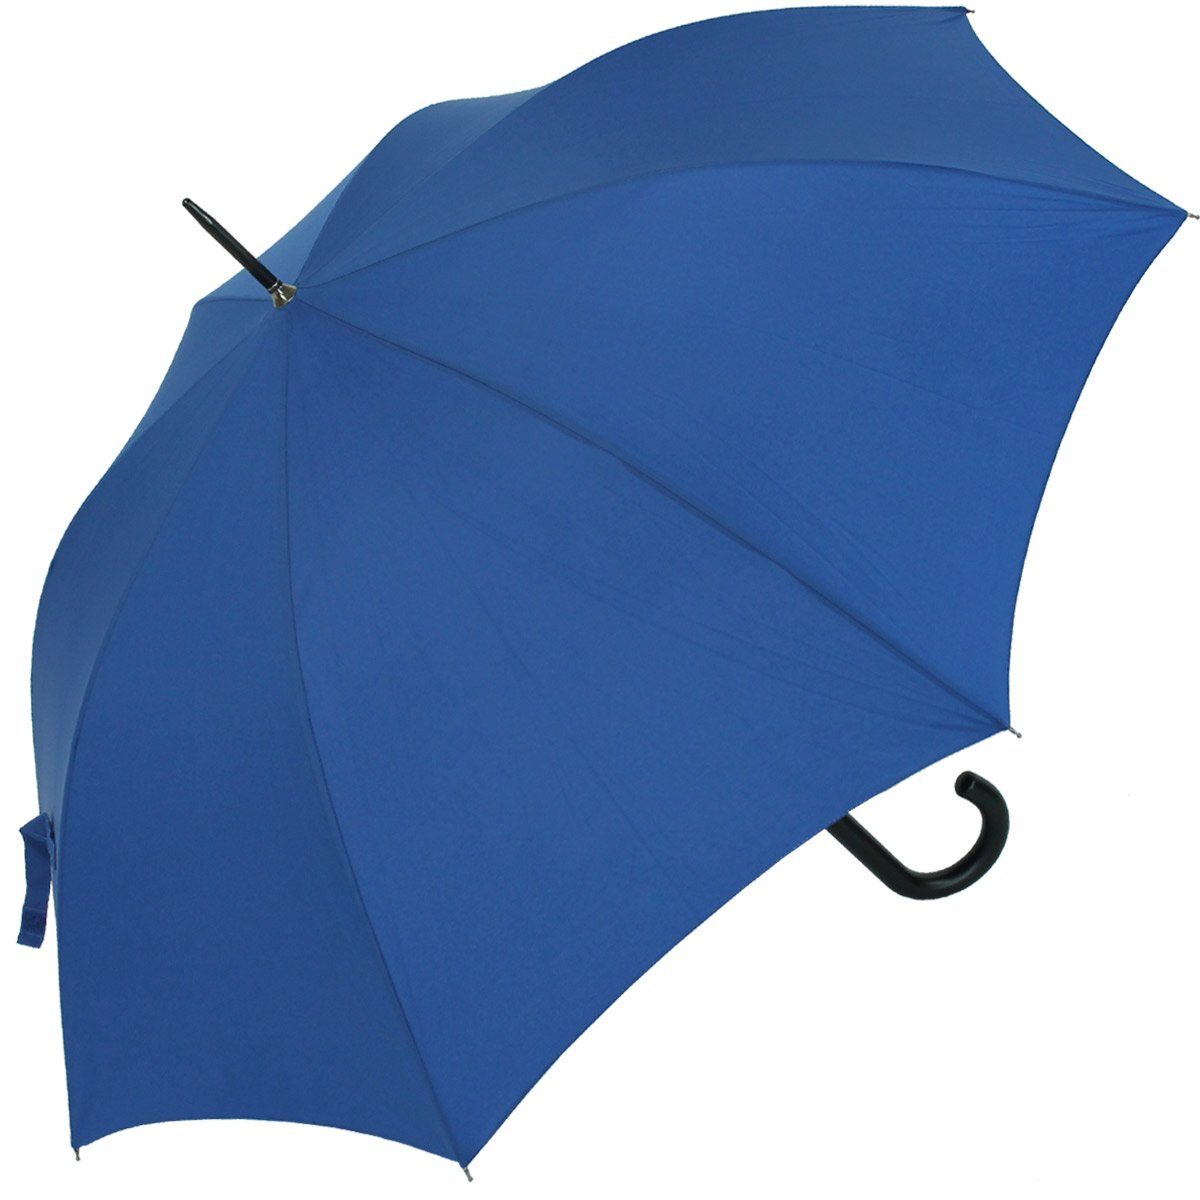 mit Langregenschirm großer Auf-Automatik, Damen modischen stabiler royal-blau in Farben Regenschirm RS-Versand für und Herren vielen